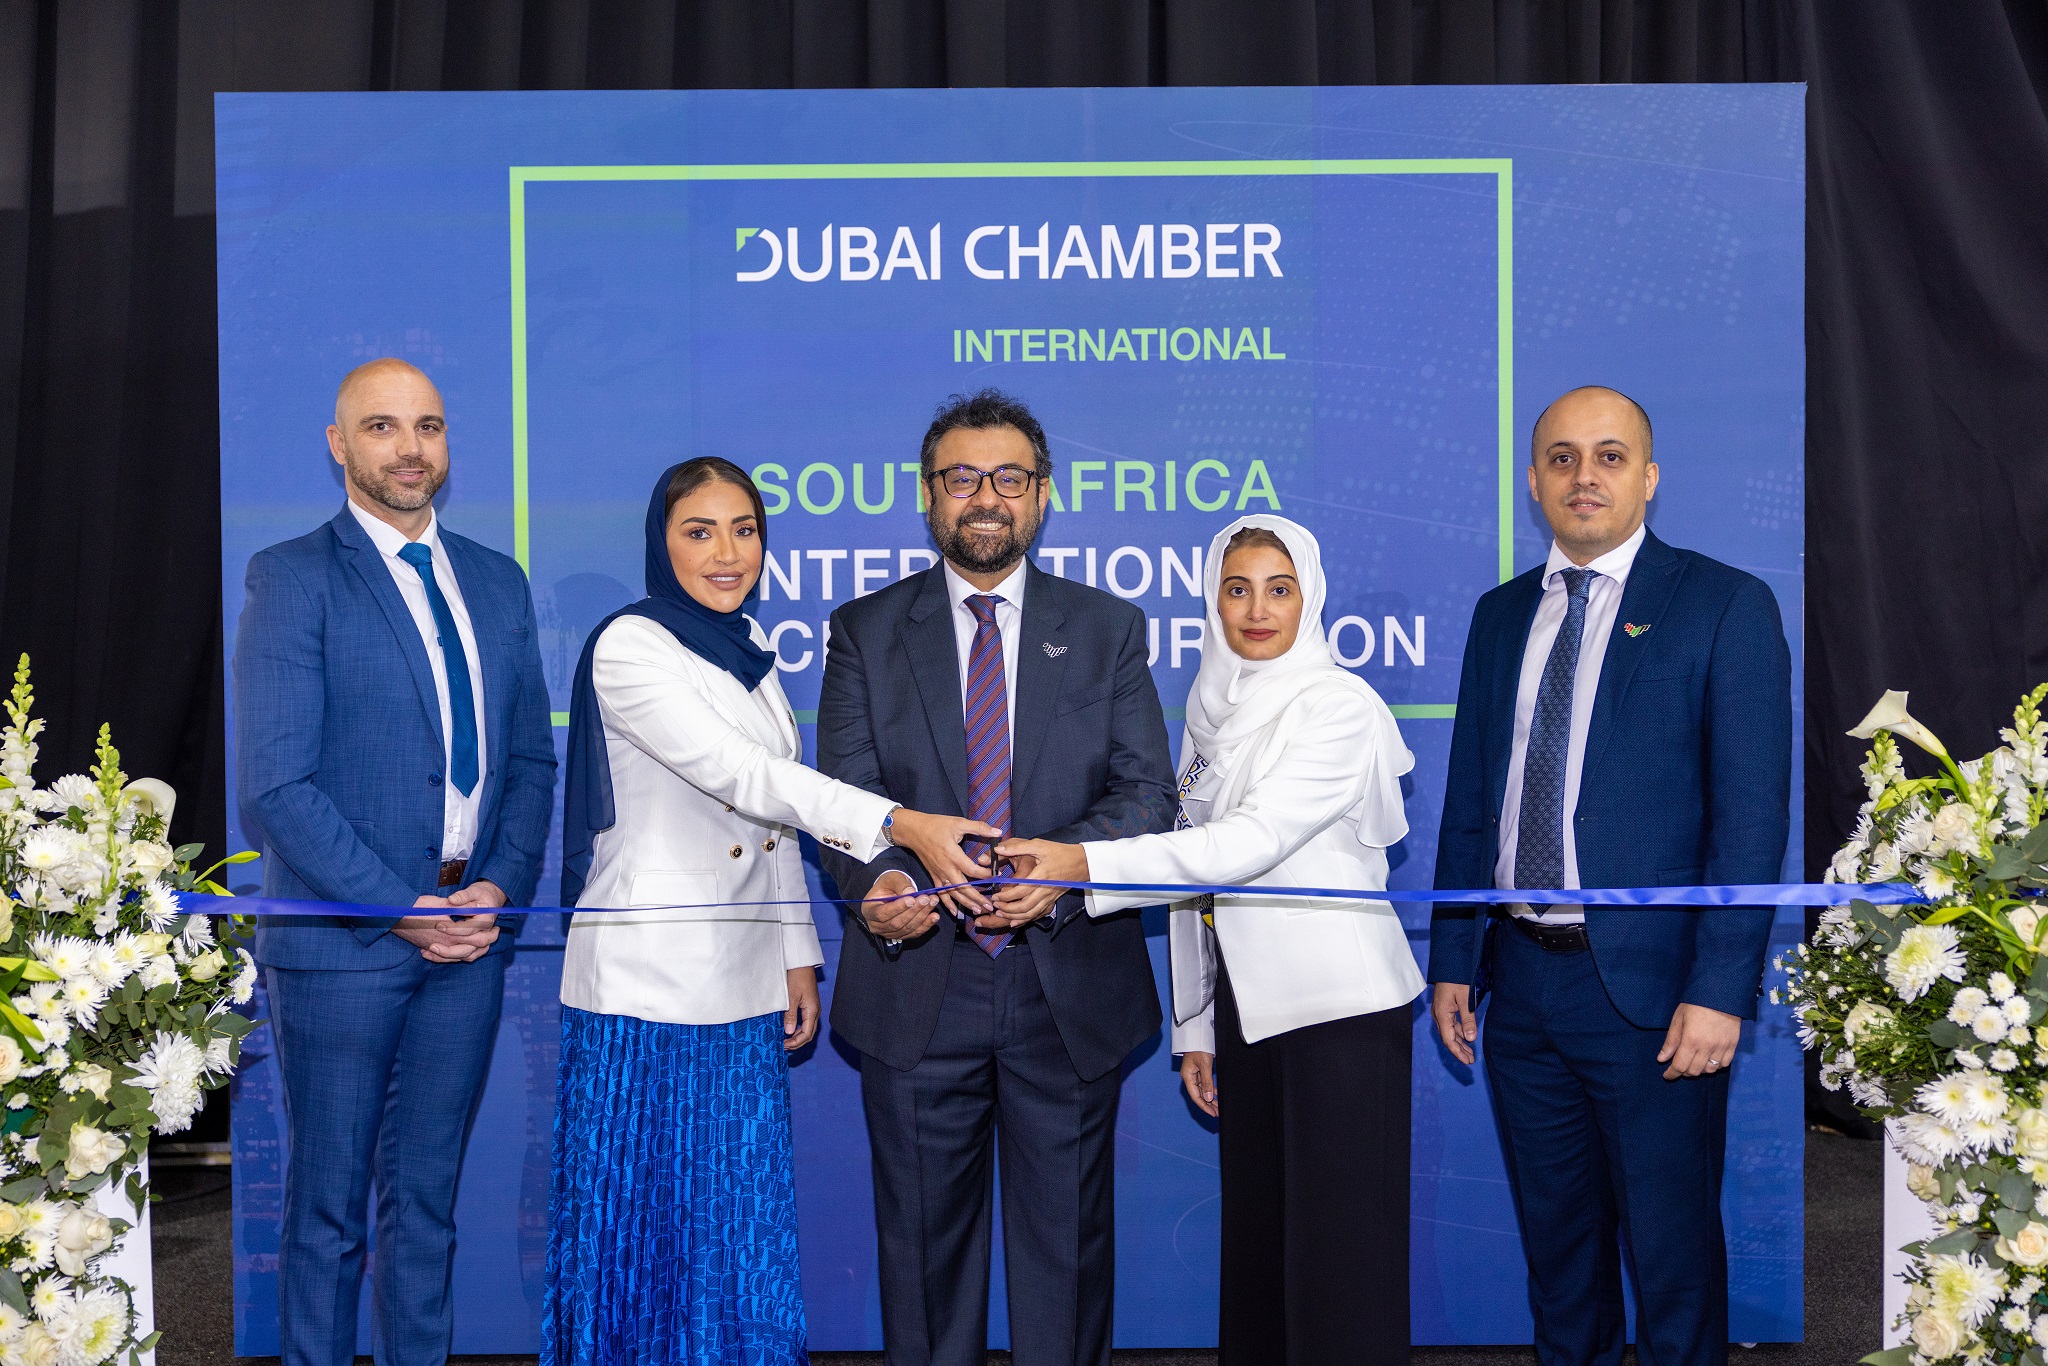 La Chambre internationale de Dubaï élargit sa présence en Afrique avec l'inauguration d'un nouveau bureau à Johannesburg